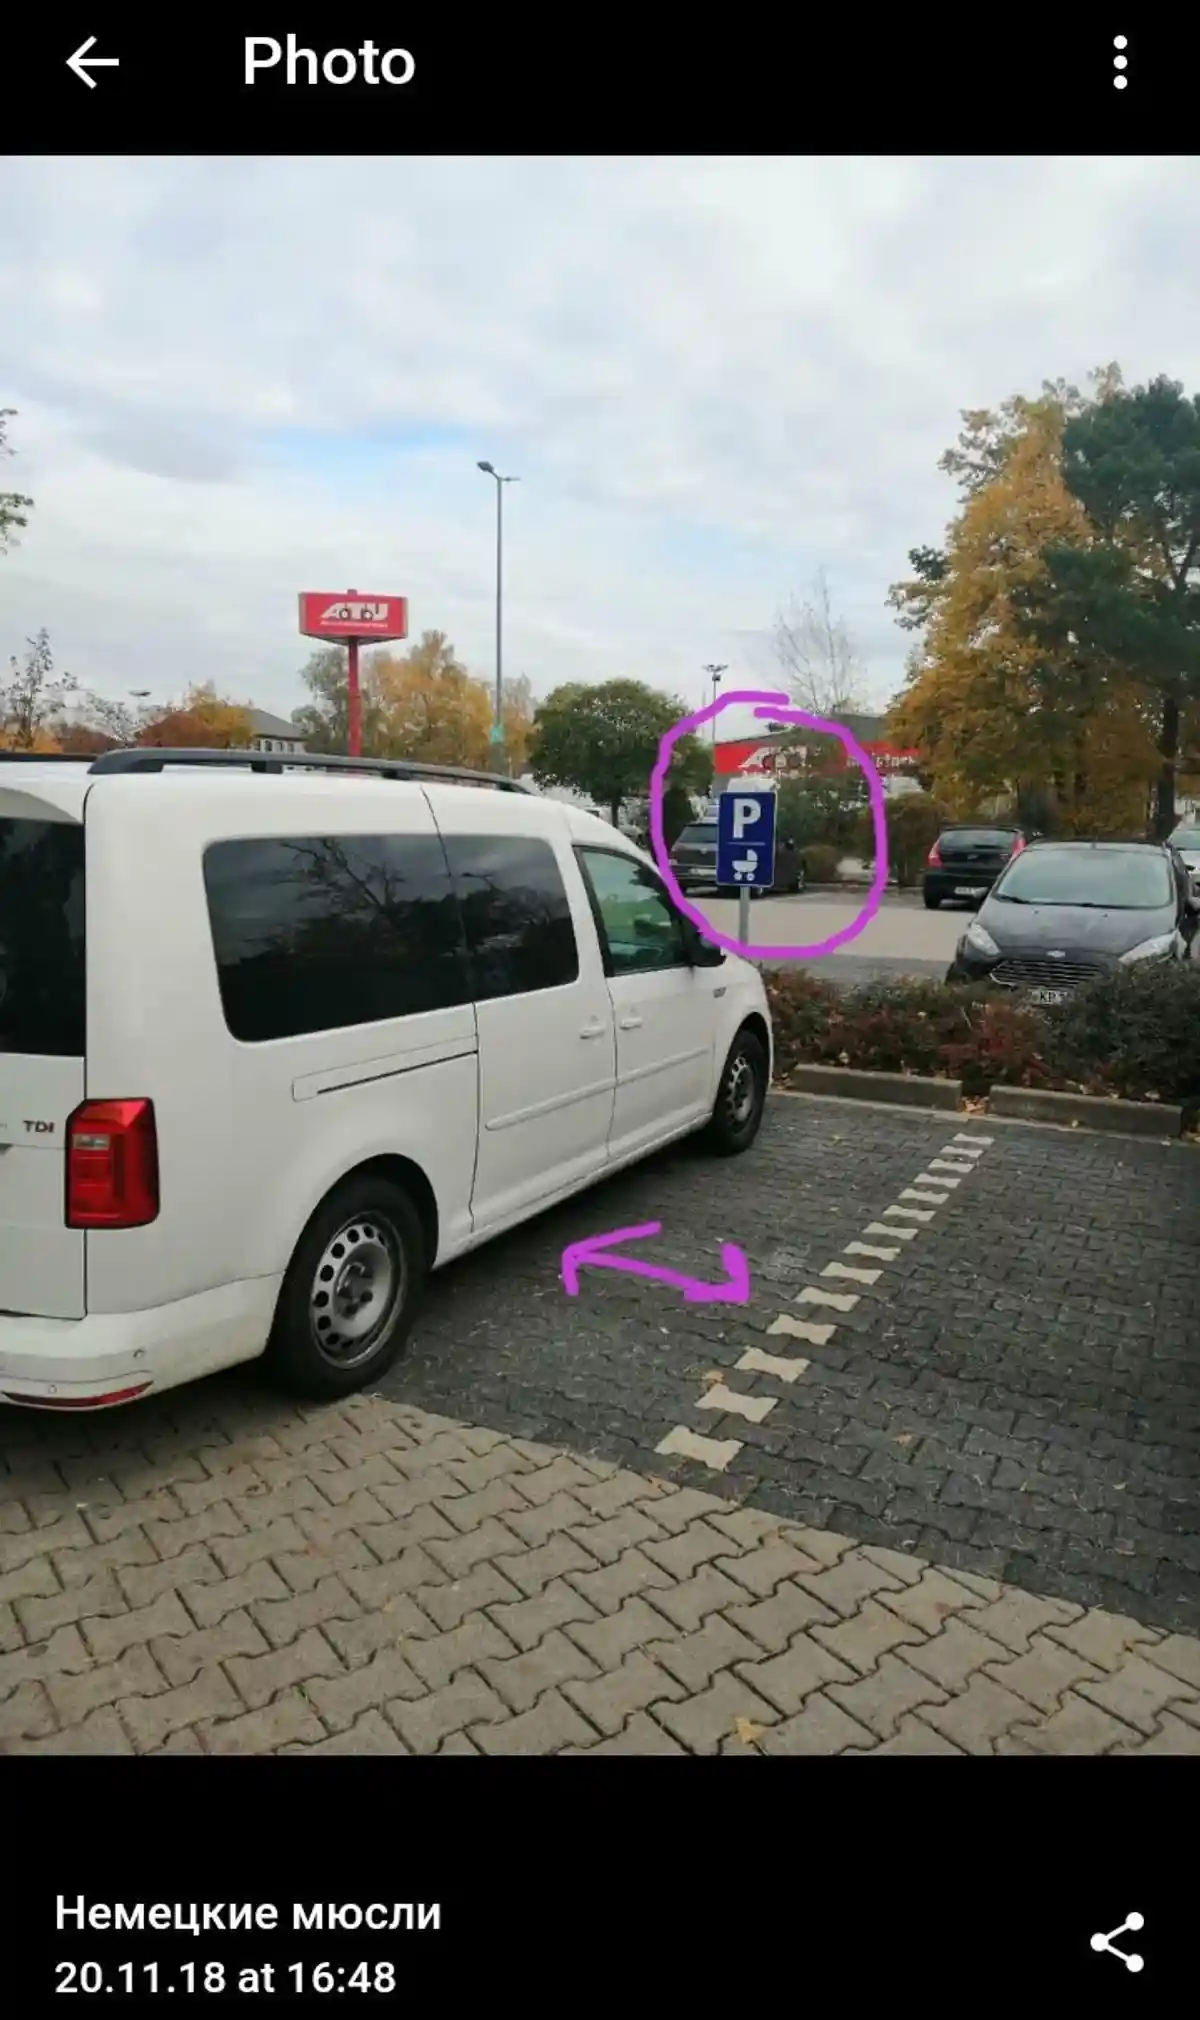 Так выглядит парковка для беременных в Бамберге. Фото: скриншот Telegram-канала @nemusli